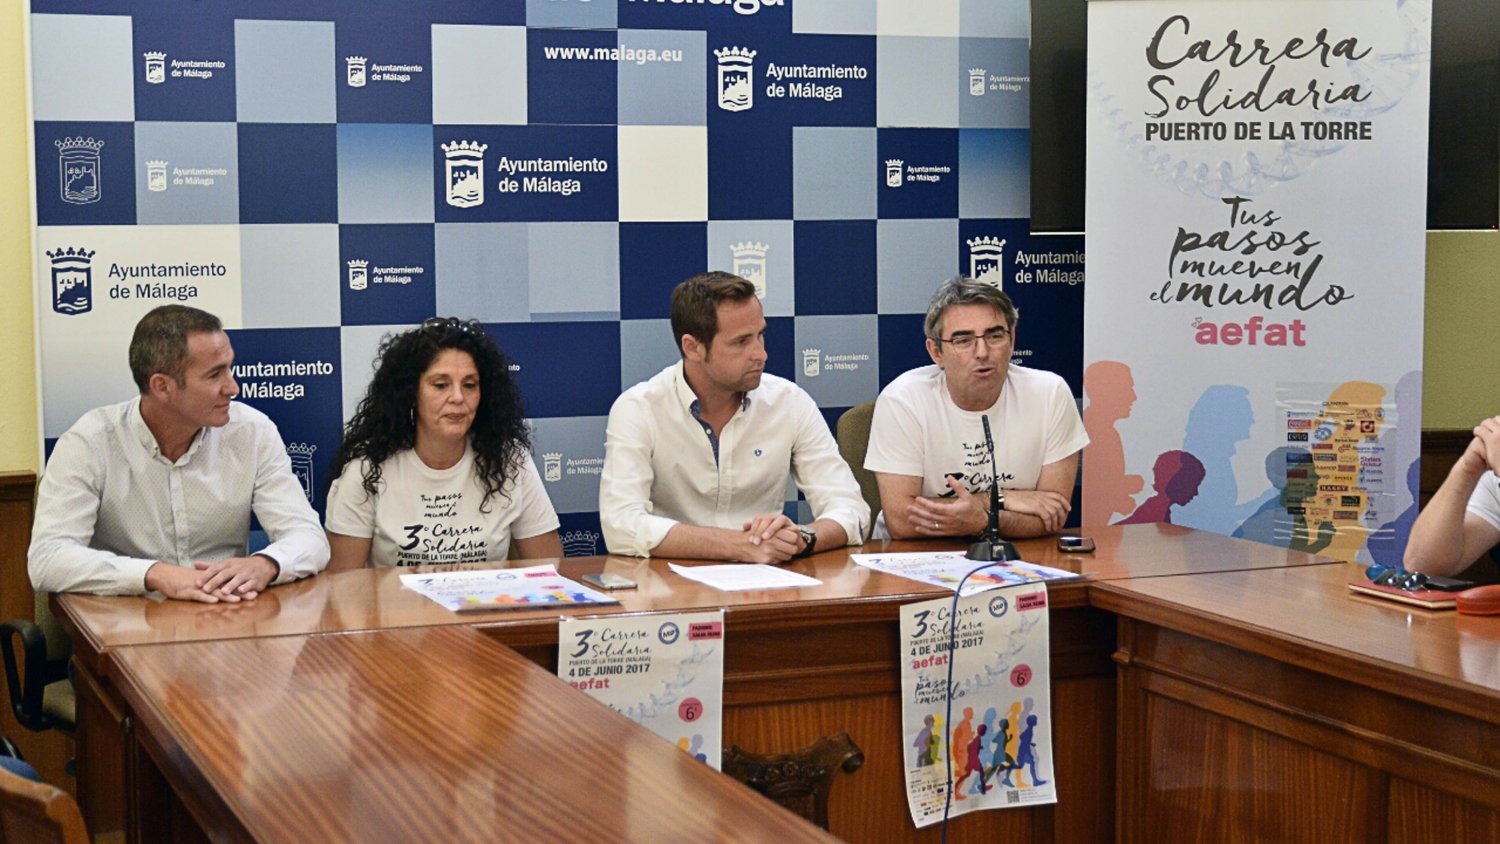 La III Carrera Solidaria de Málaga buscará los 1.500 inscritos para investigar la Ataxia Telangiectasia